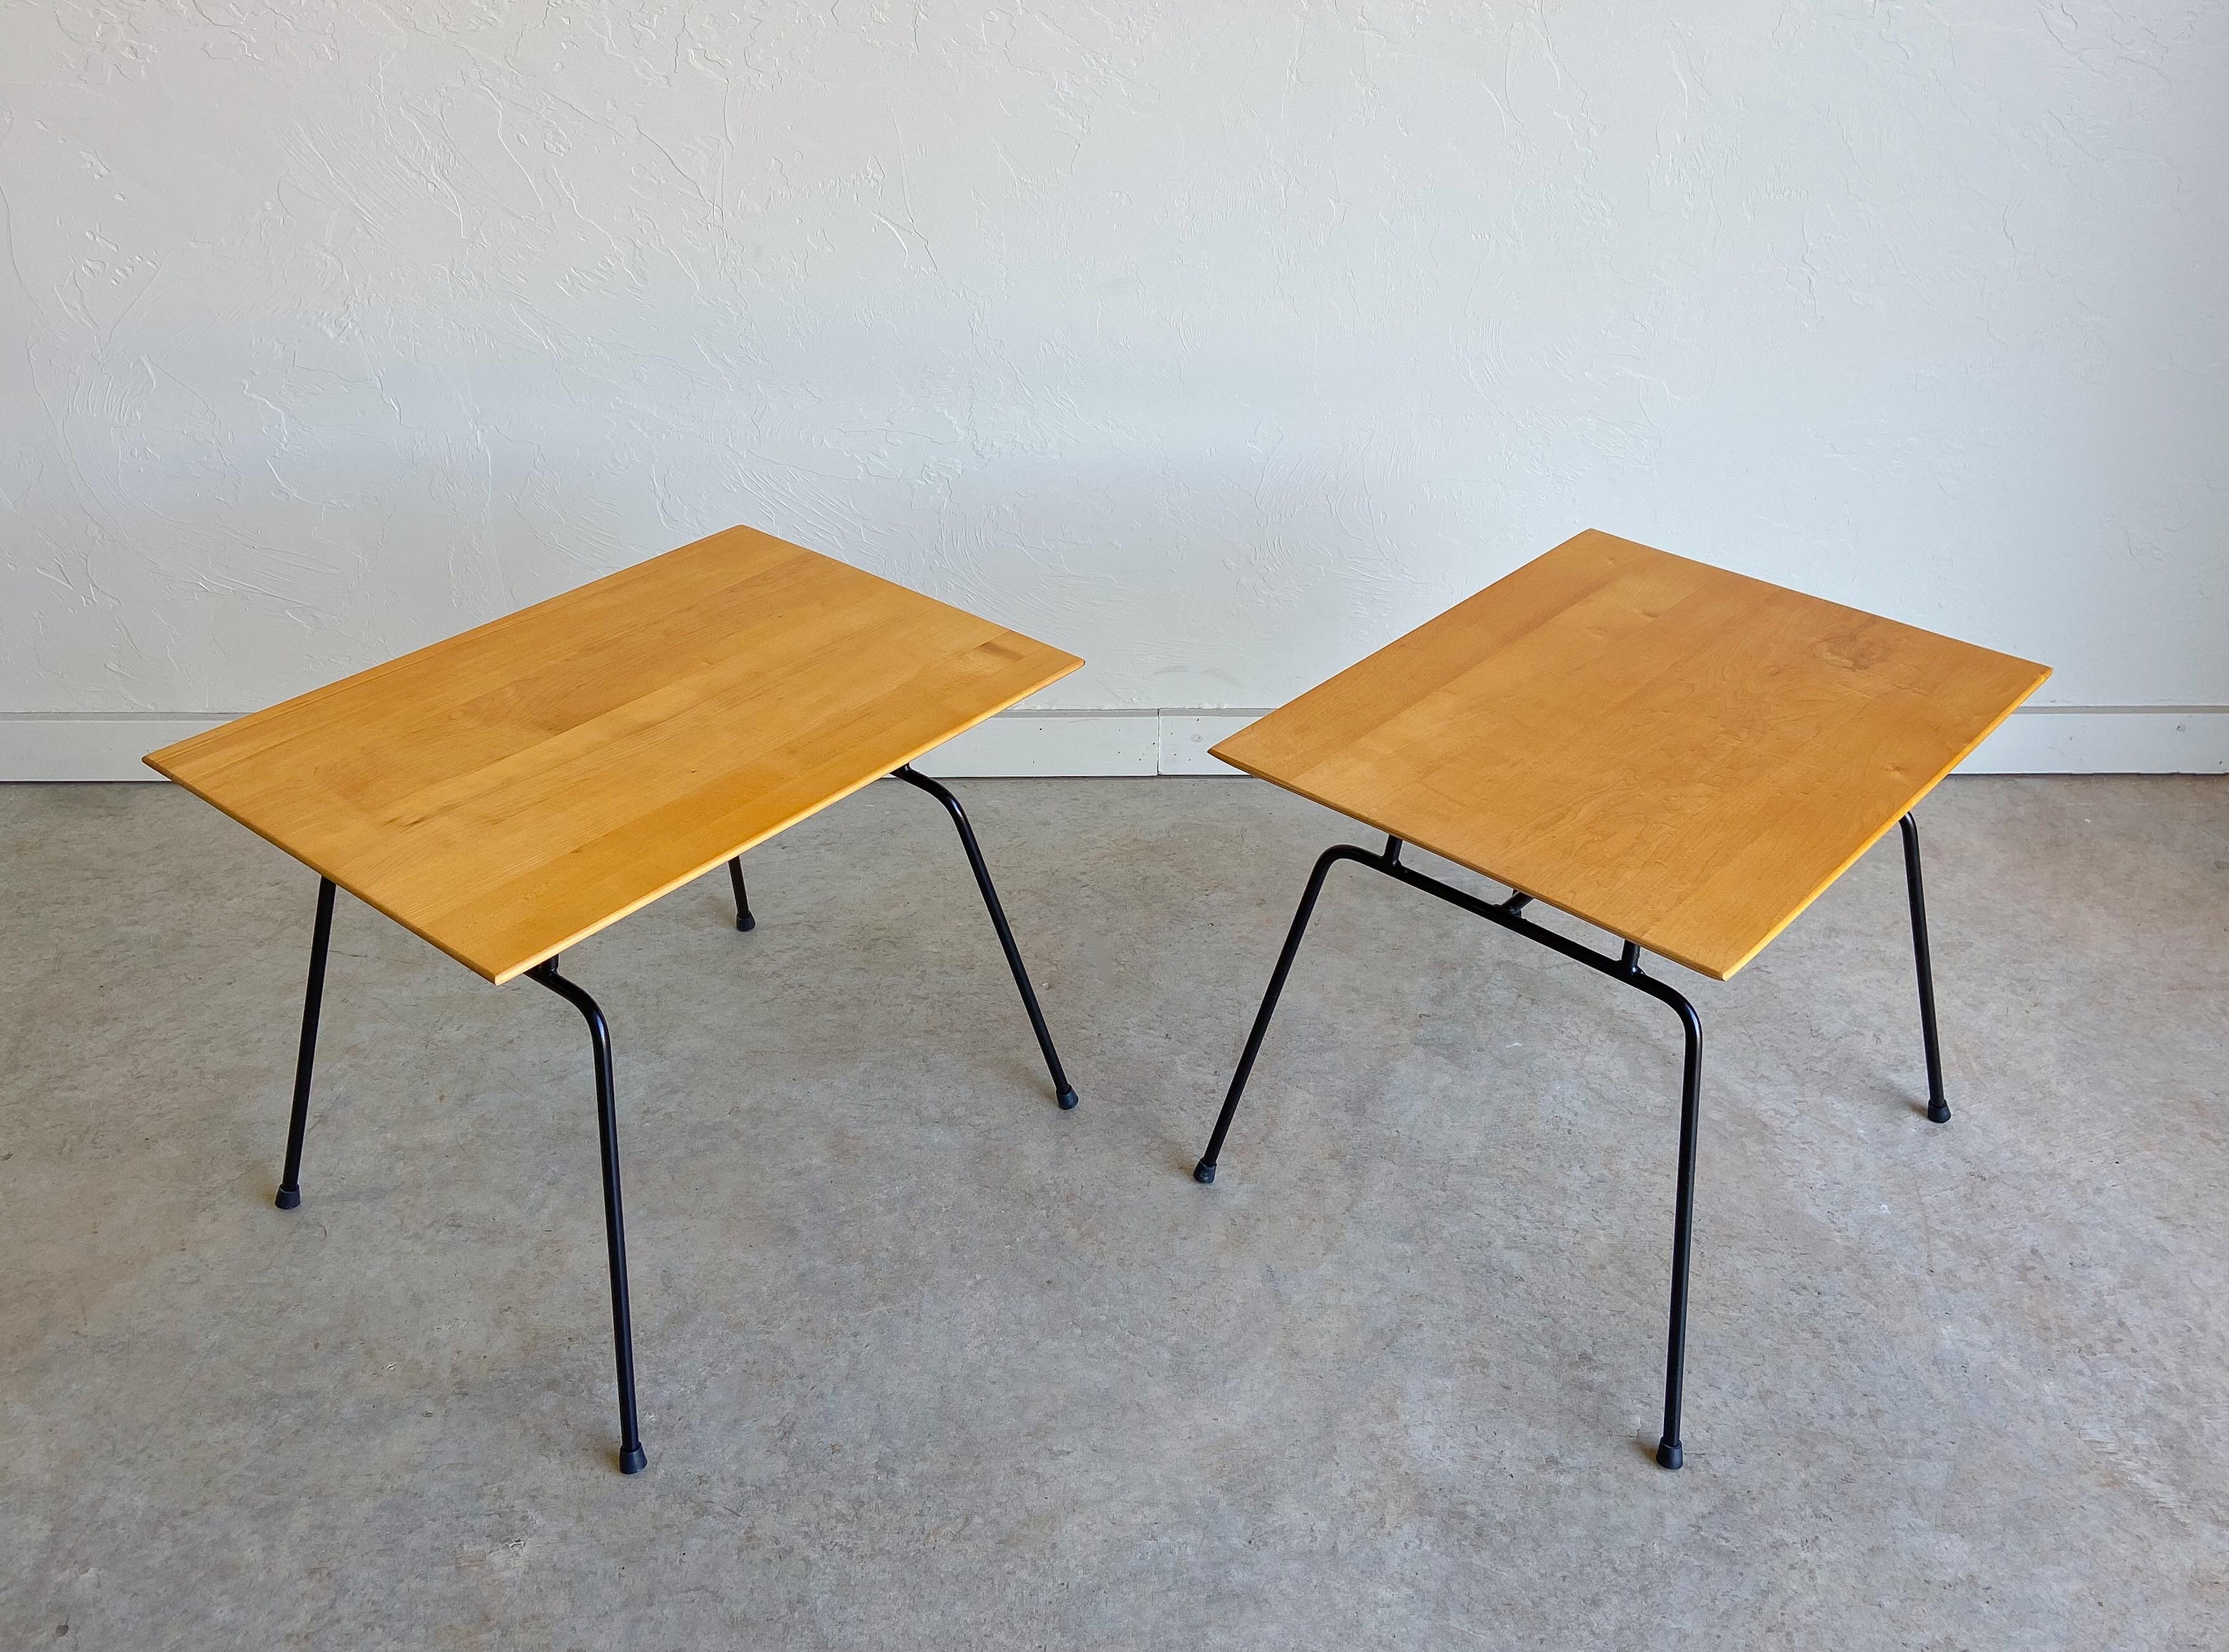 Une paire de tables d'appoint en fer et bouleau de Paul McCobb, conçue pour Winchendon Furniture dans les années 1950.

Ce sont des exemples fantastiques du design moderne américain précoce. La gamme de meubles Planner Group de McCobb, à la fois